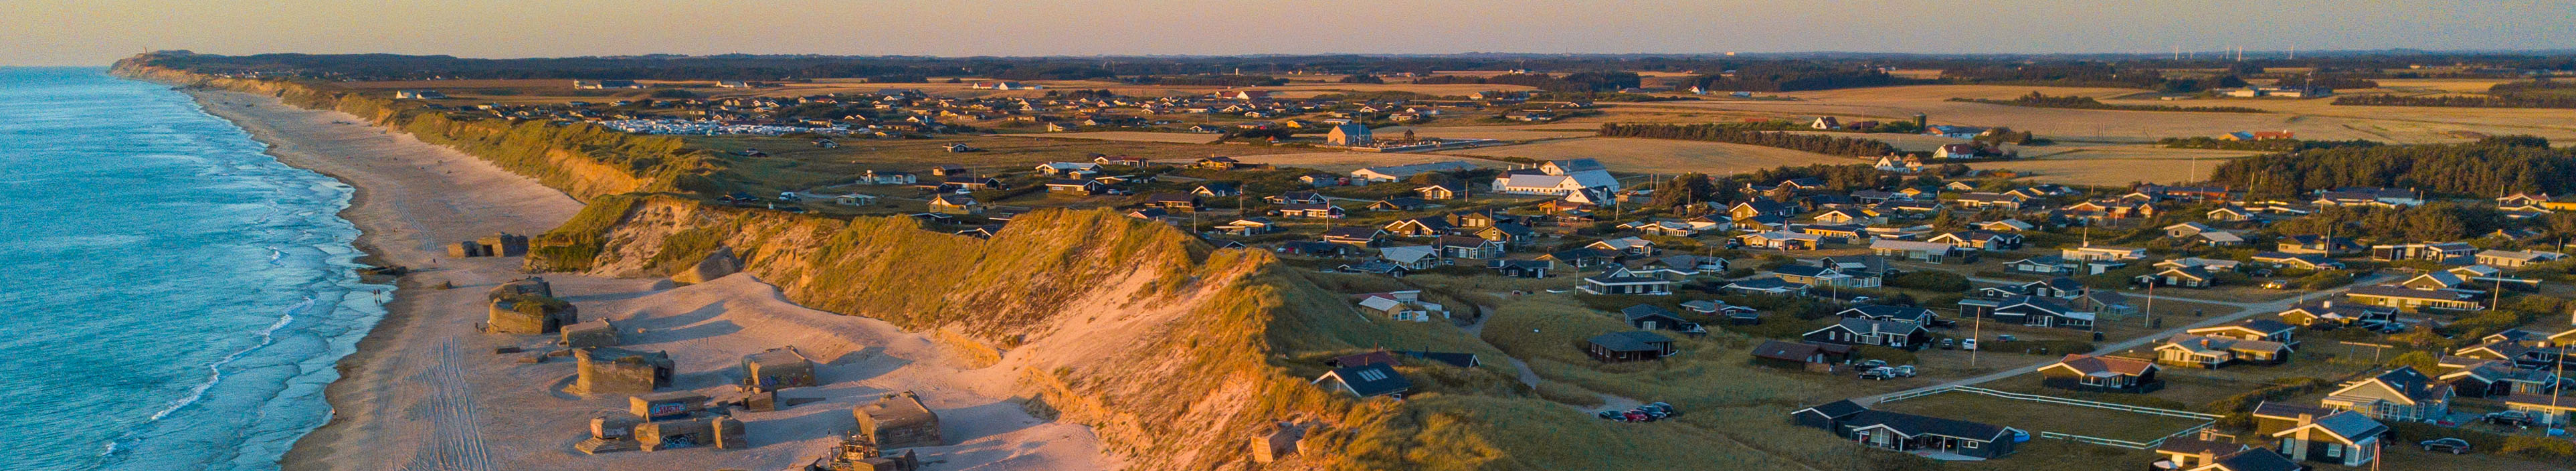 Blick auf einen Strand in Dänemark, Häuser und Küste.